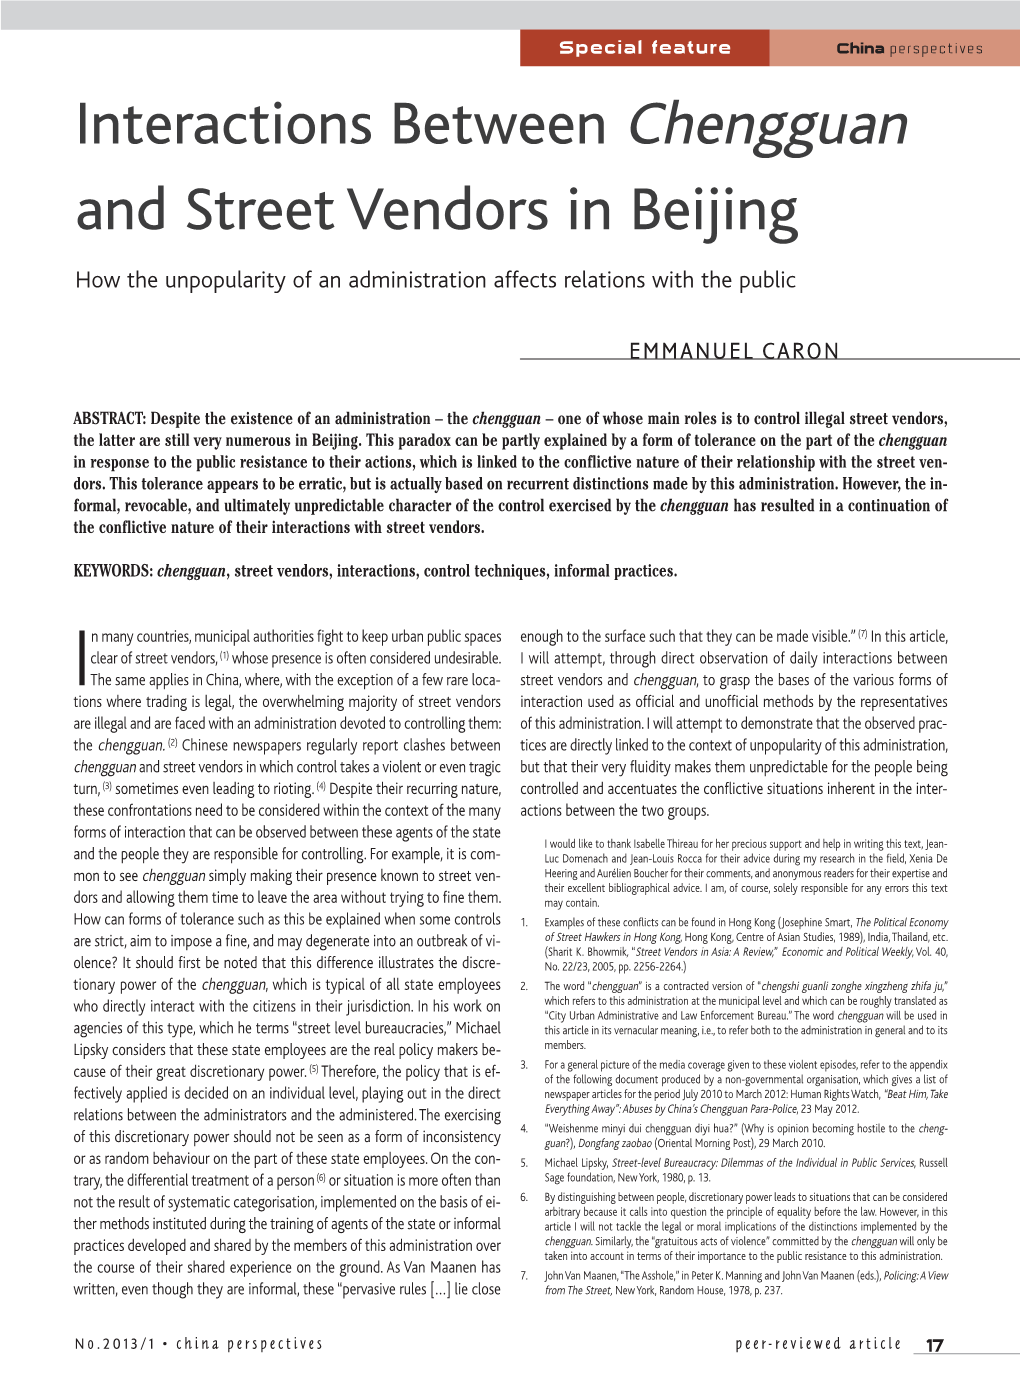 Interactions Between Chengguan and Street Vendors in Beijing